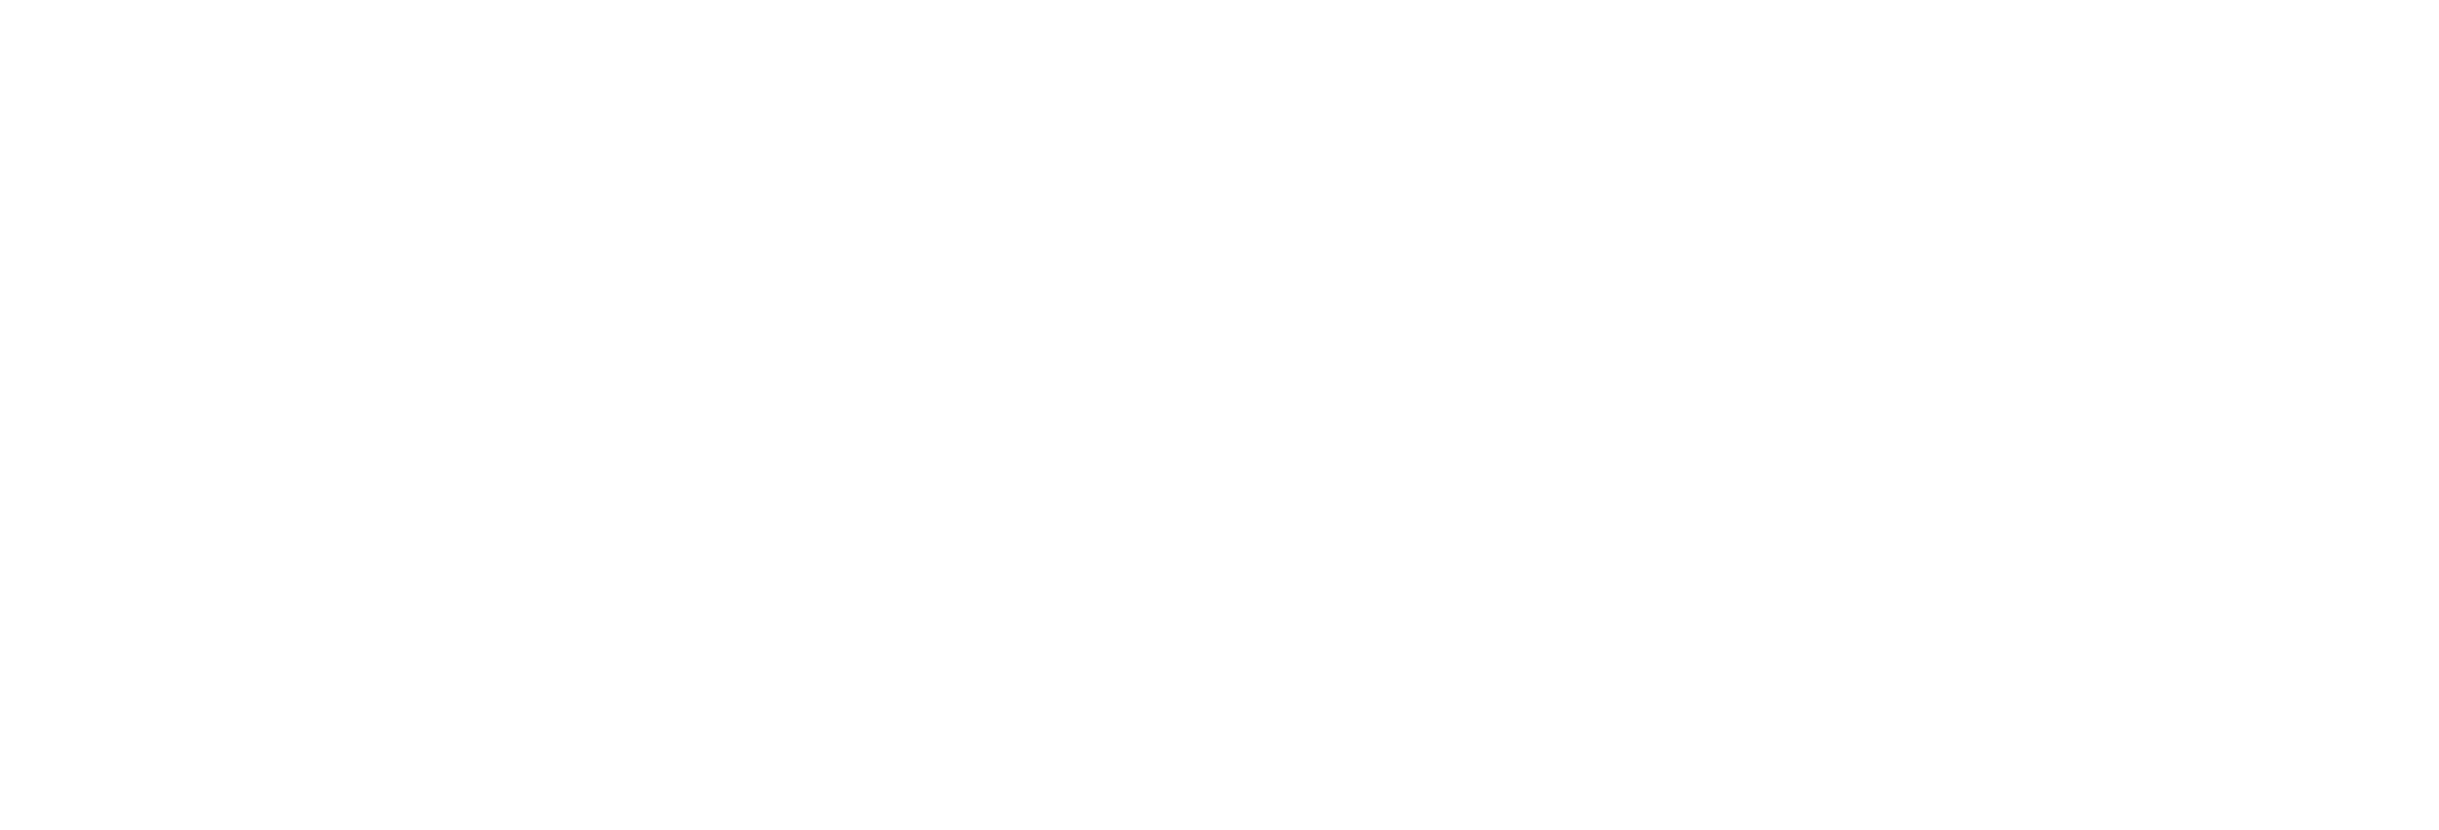 Academie de Kunstbrug